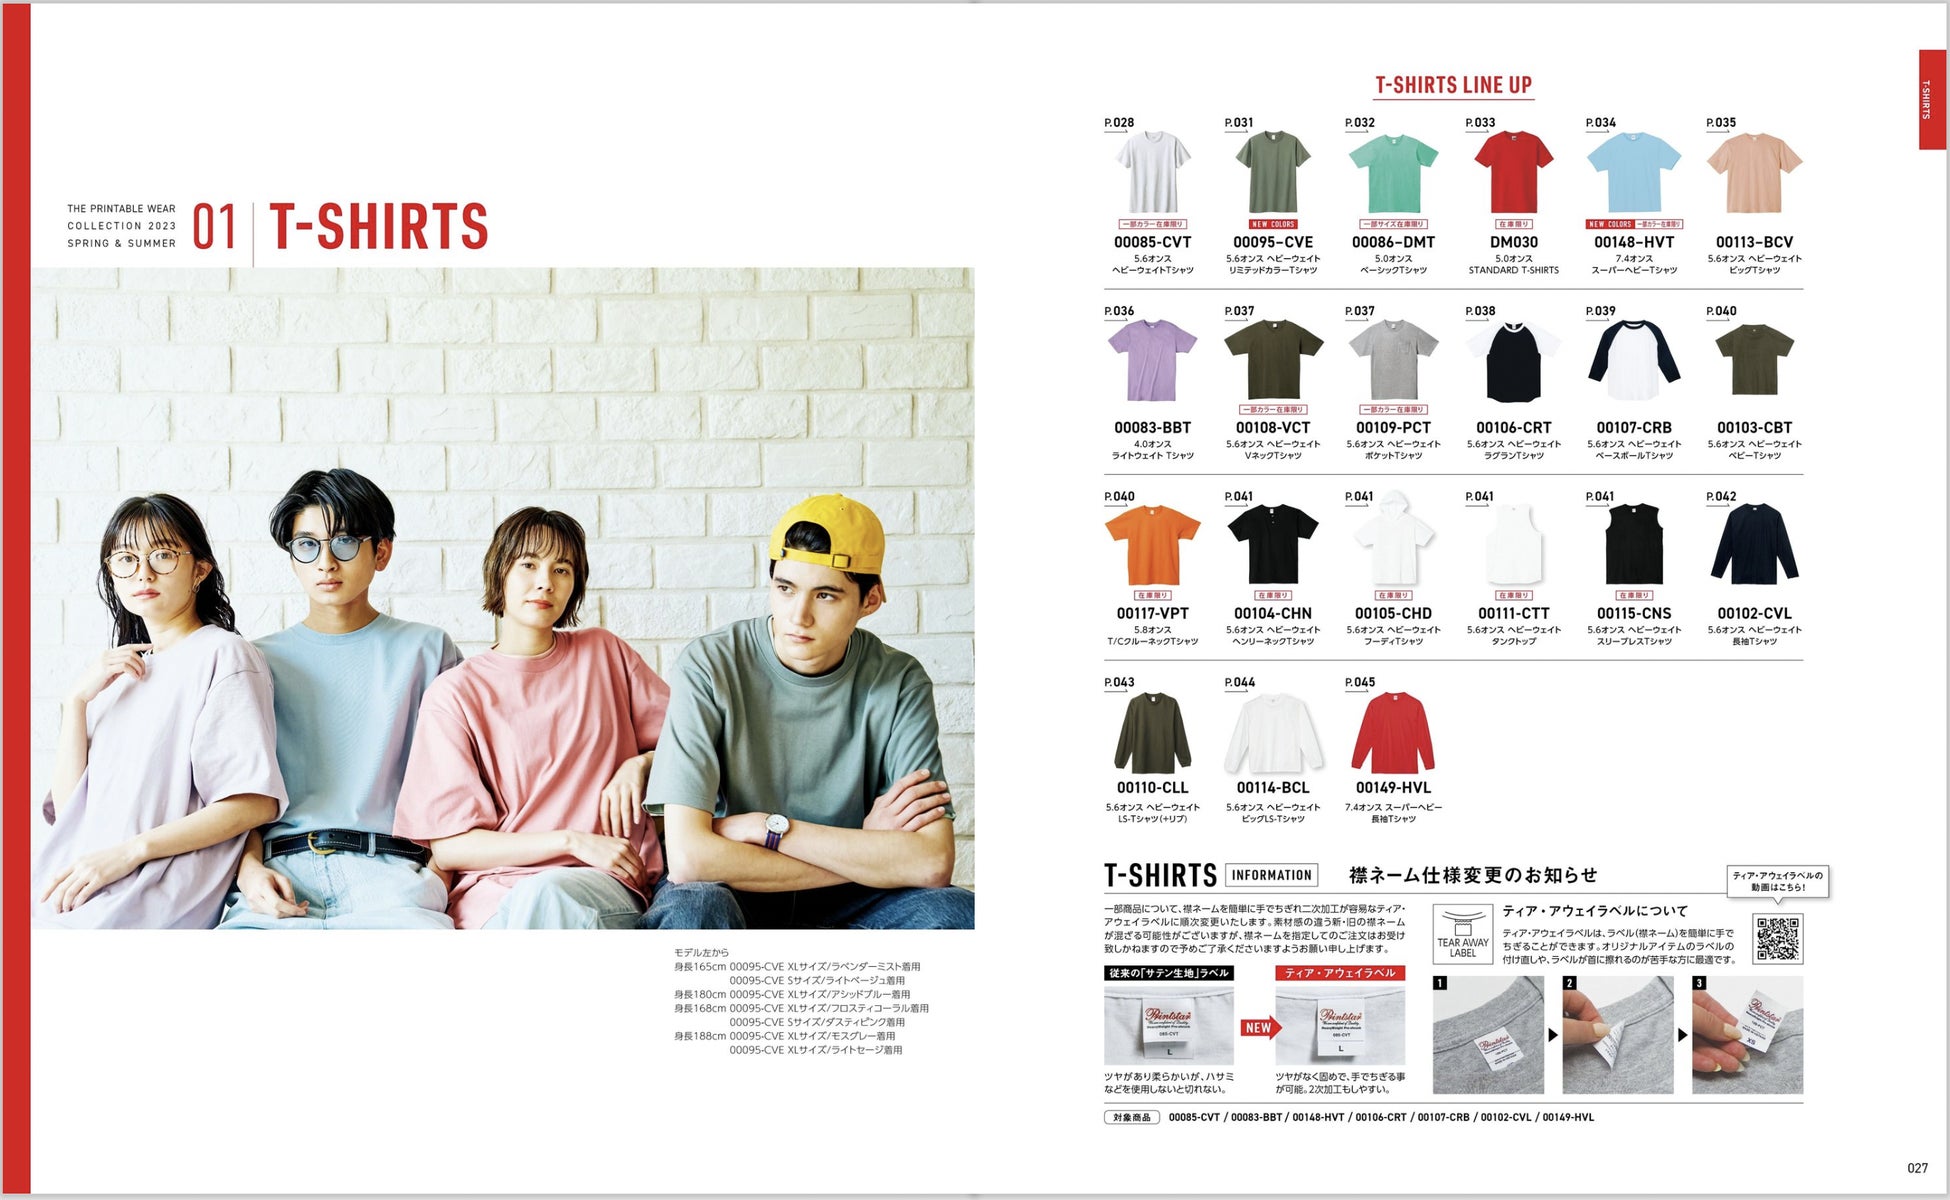 プリンタブルウェア「Printstar」「glimmer」と人気メディア『NEUT Magazine』がコラボで最新カタログを発刊。俳優松㟢翔平ら7組が自作Tシャツを披露。プレゼントキャンペーンも実施のサブ画像11